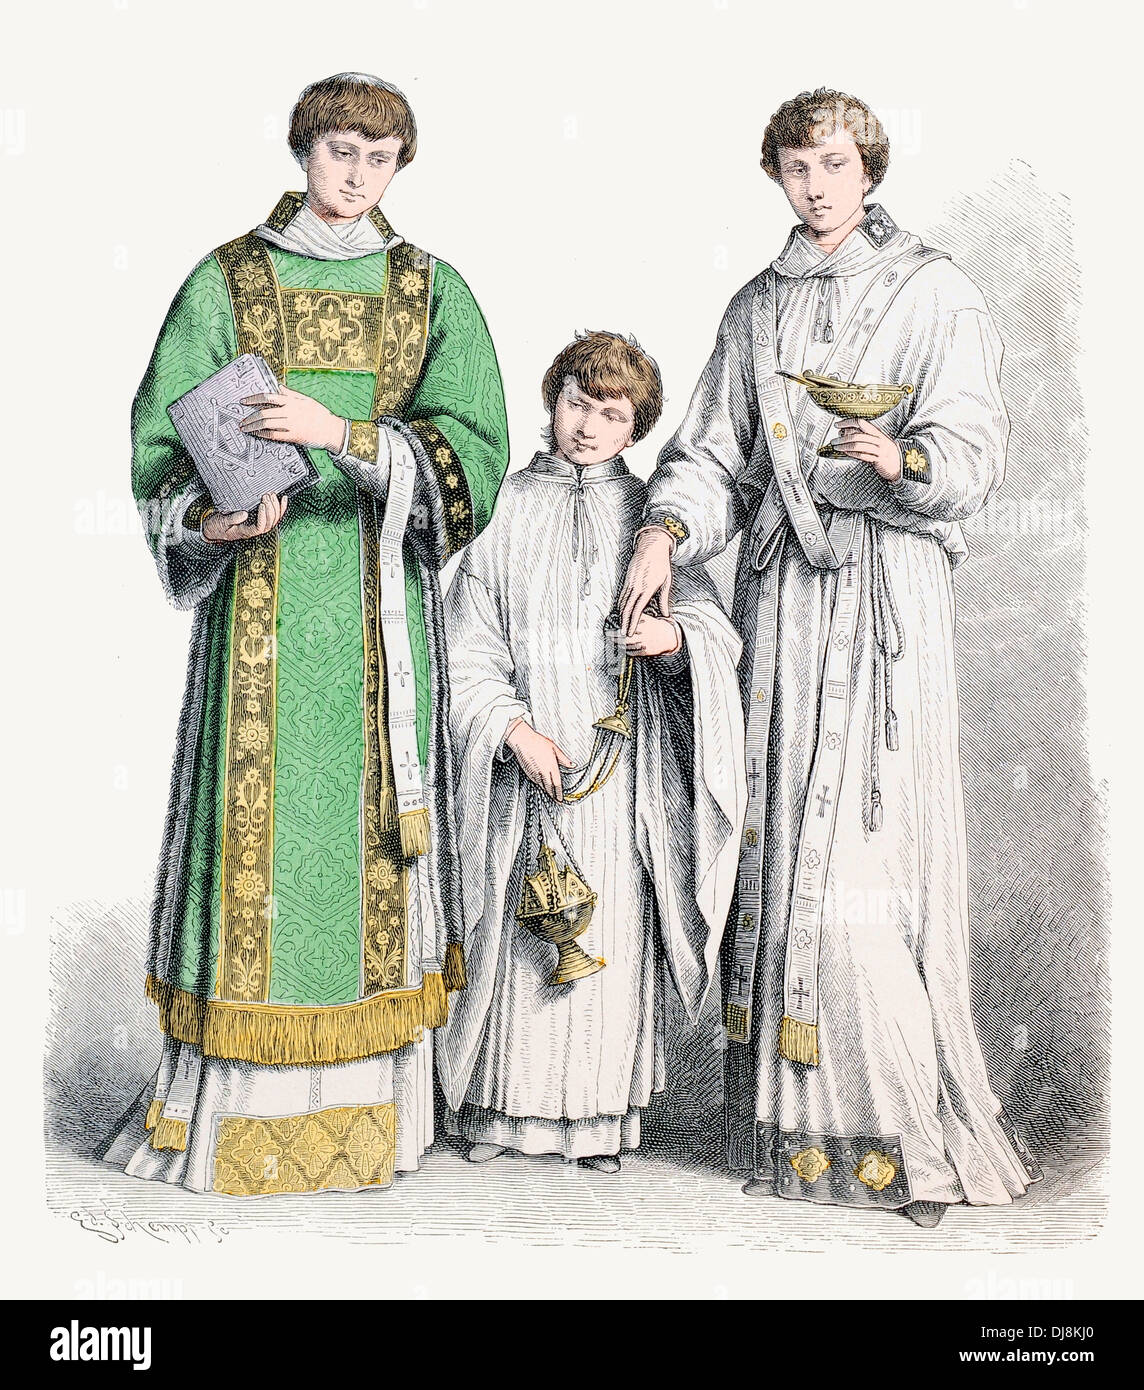 Xvi XVI XVII secolo XVII italiano costumi ecclesiastici diacono suddiacono e Alter coro boy in bianche vesti Foto Stock